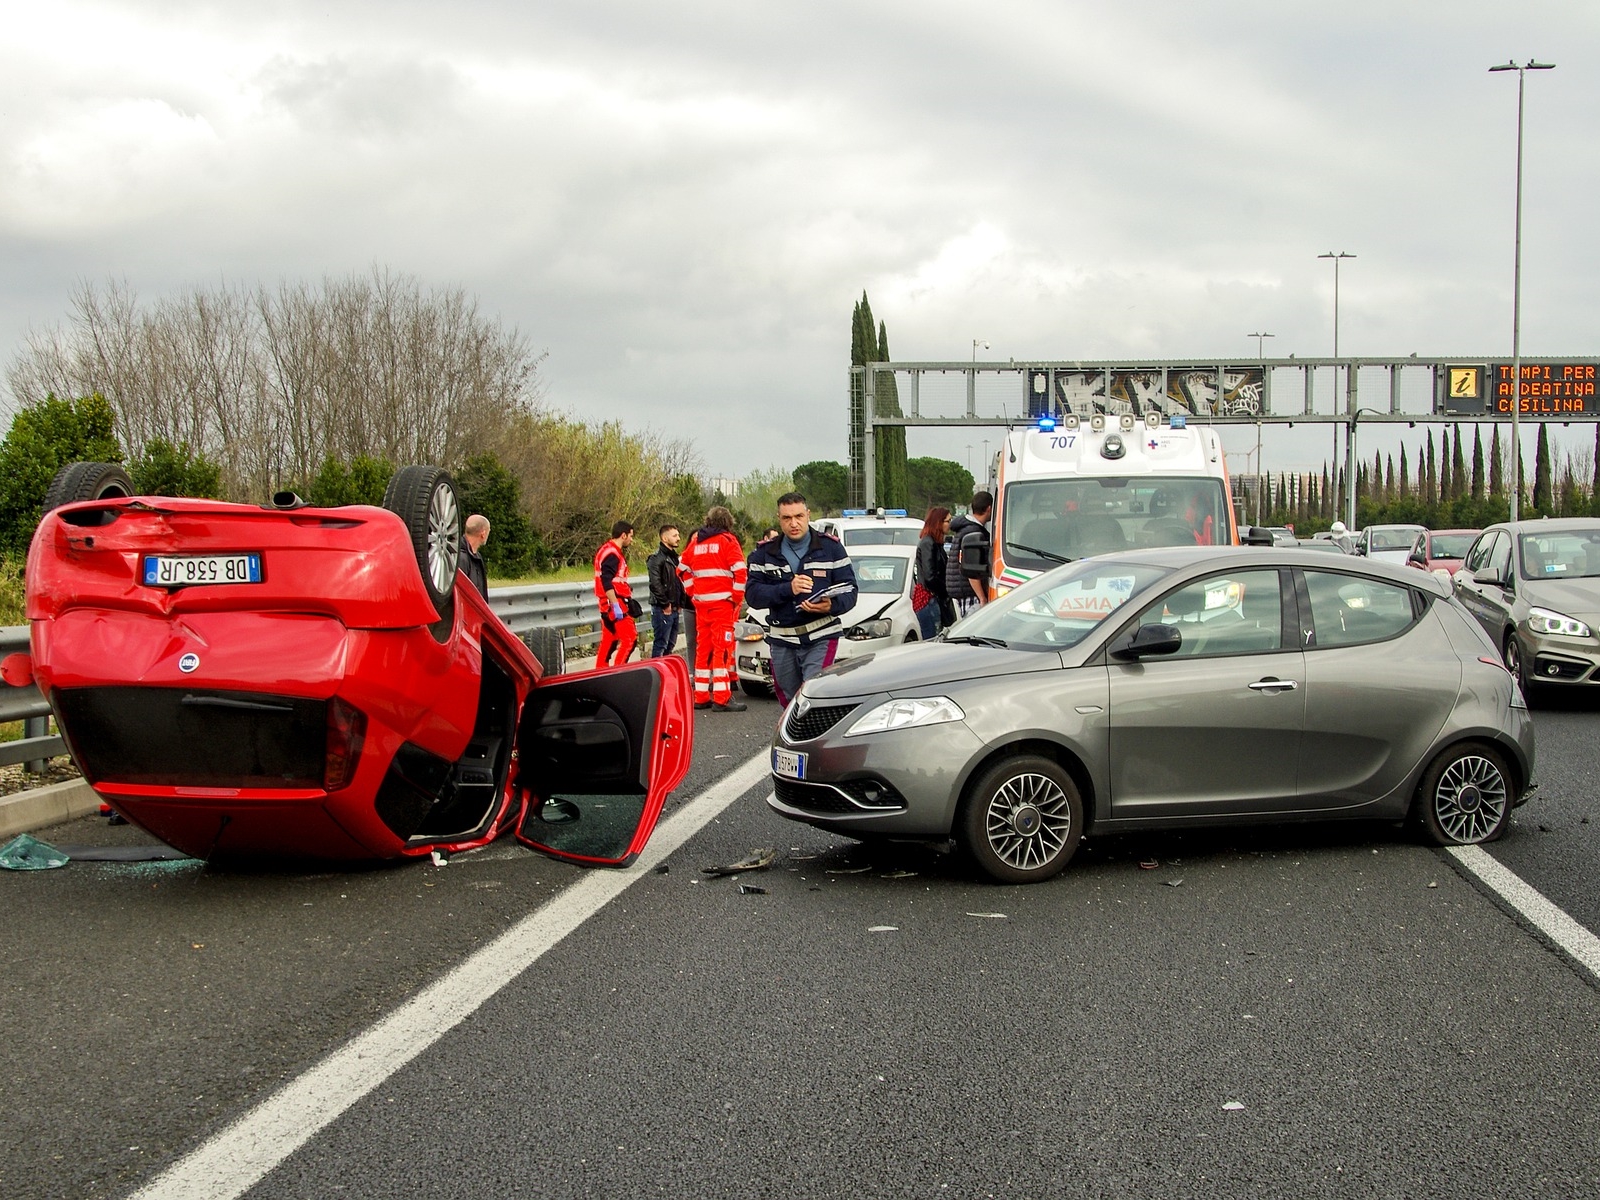 Bồi thường thiệt hại tai nạn giao thông - Những điều cần biết